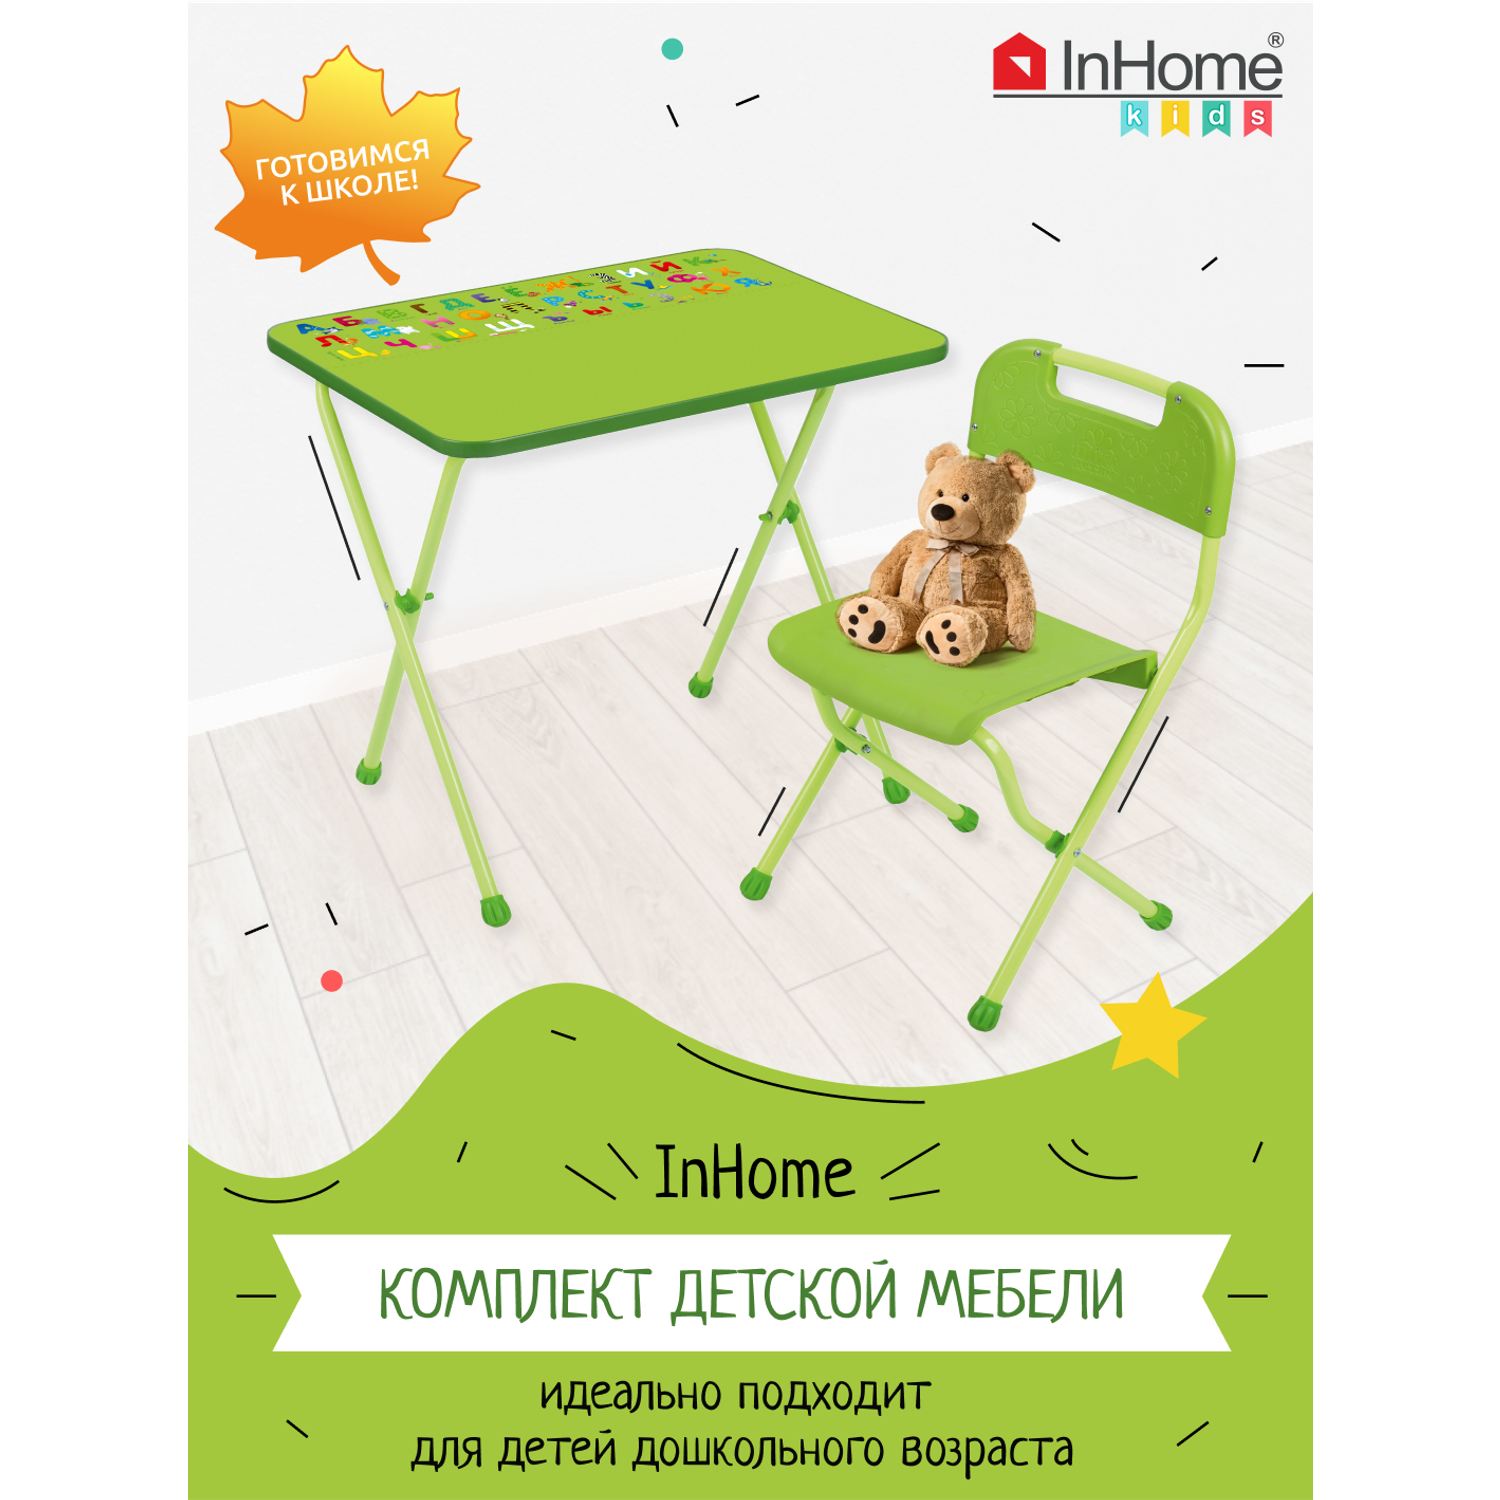 Комплект детской мебели InHome складной с алфавитом - фото 1